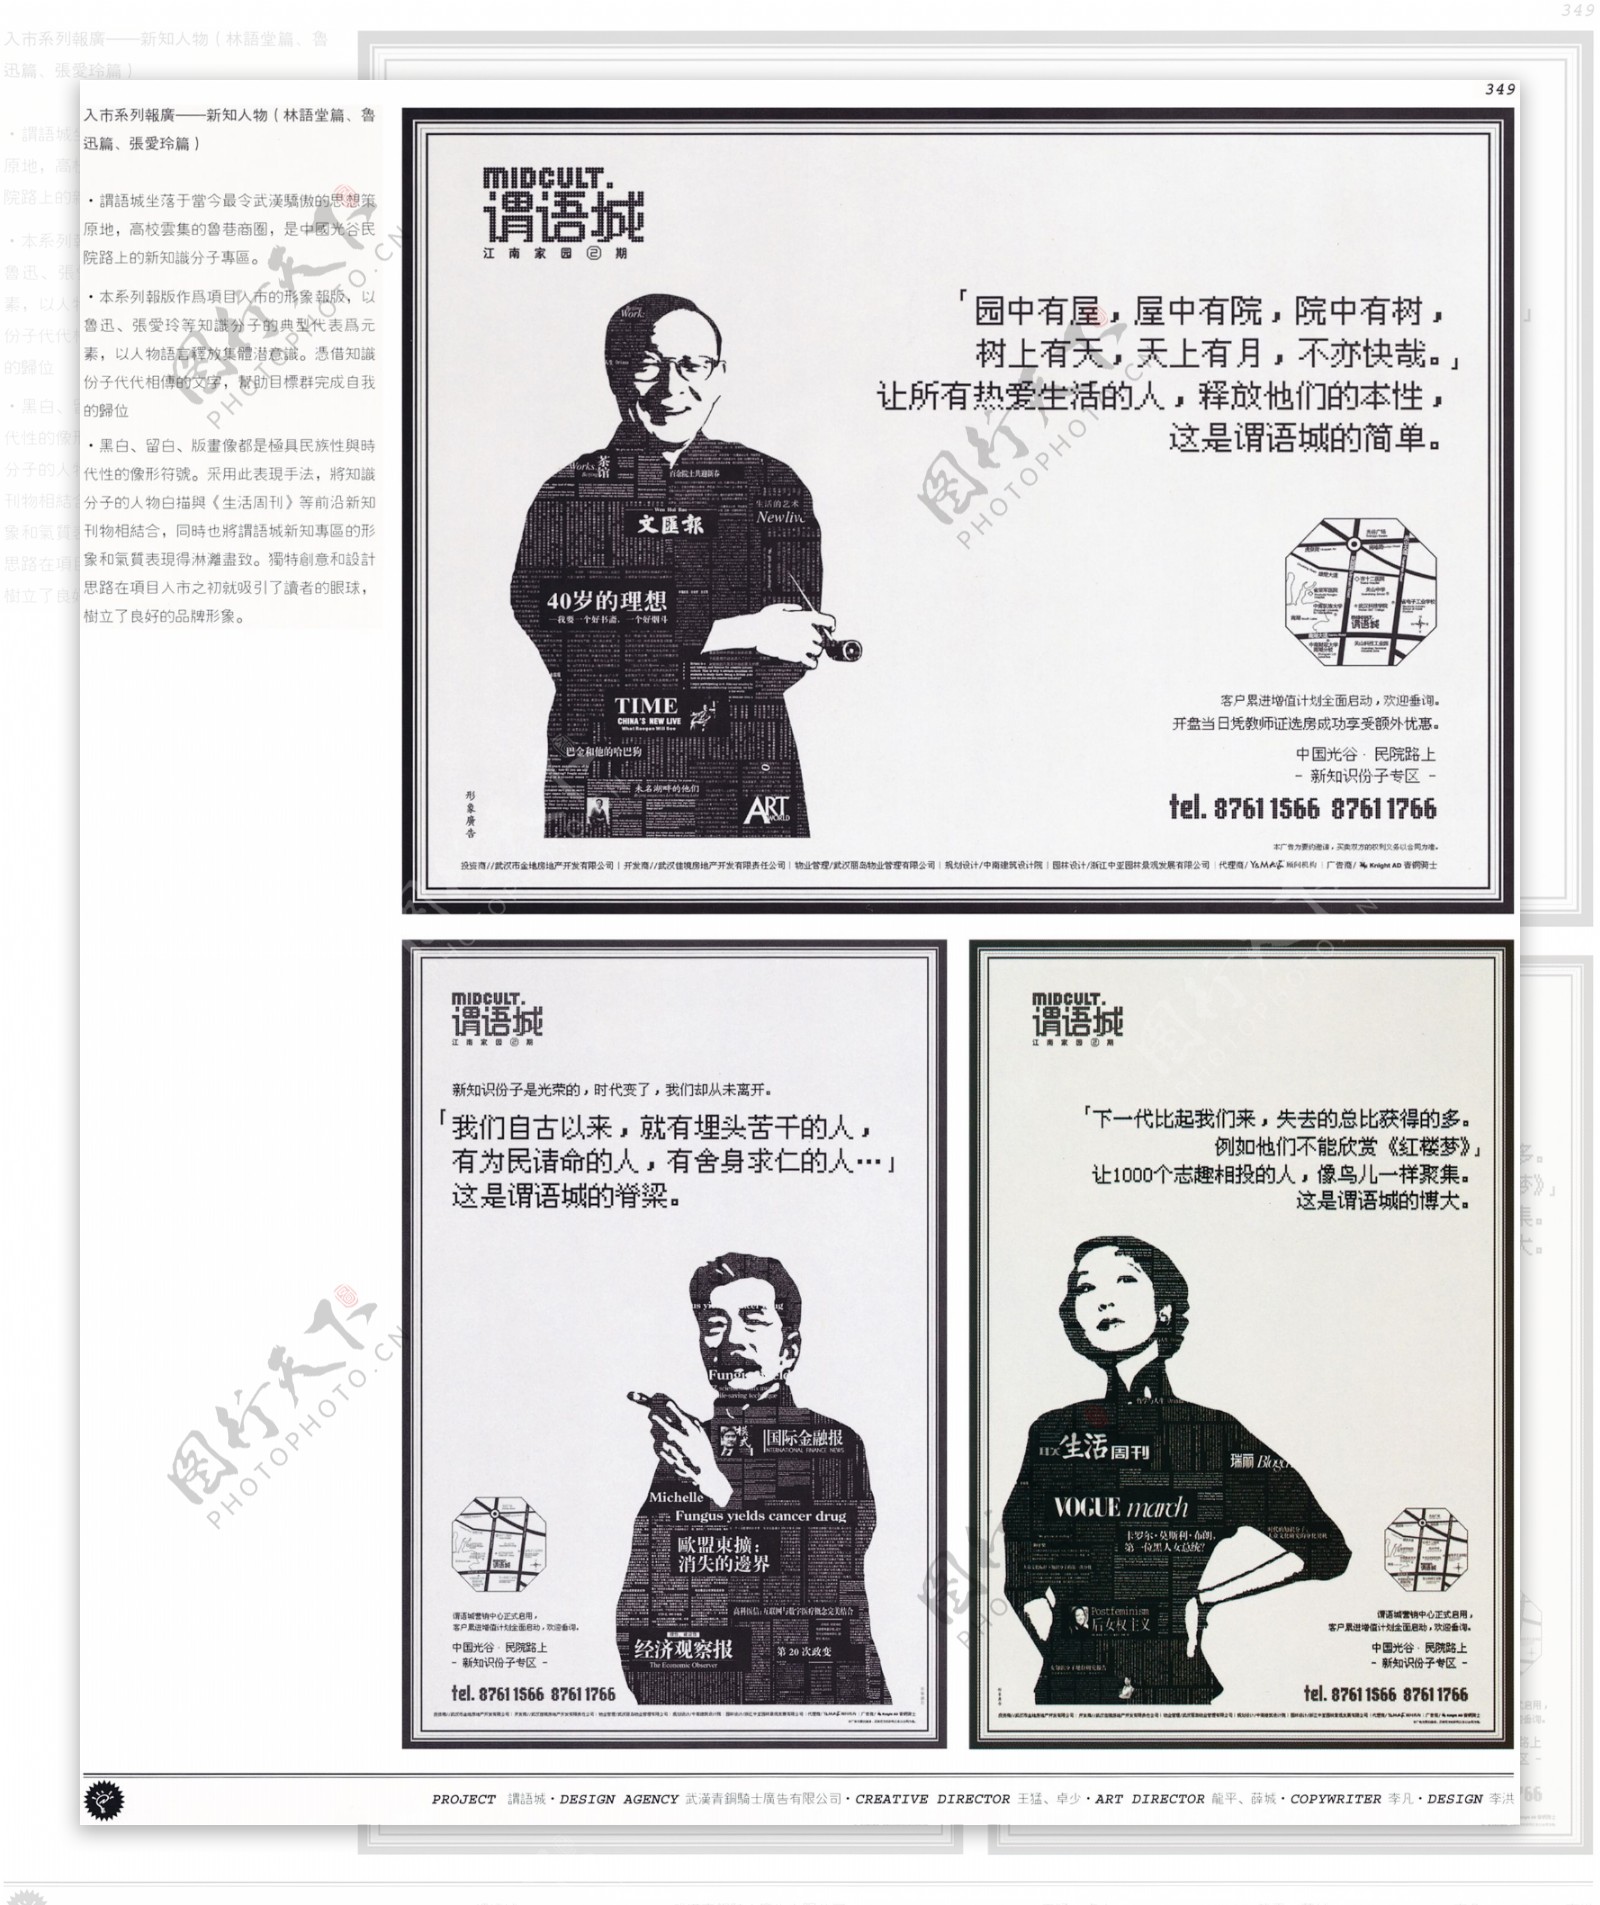 中国房地产广告年鉴第二册创意设计0331